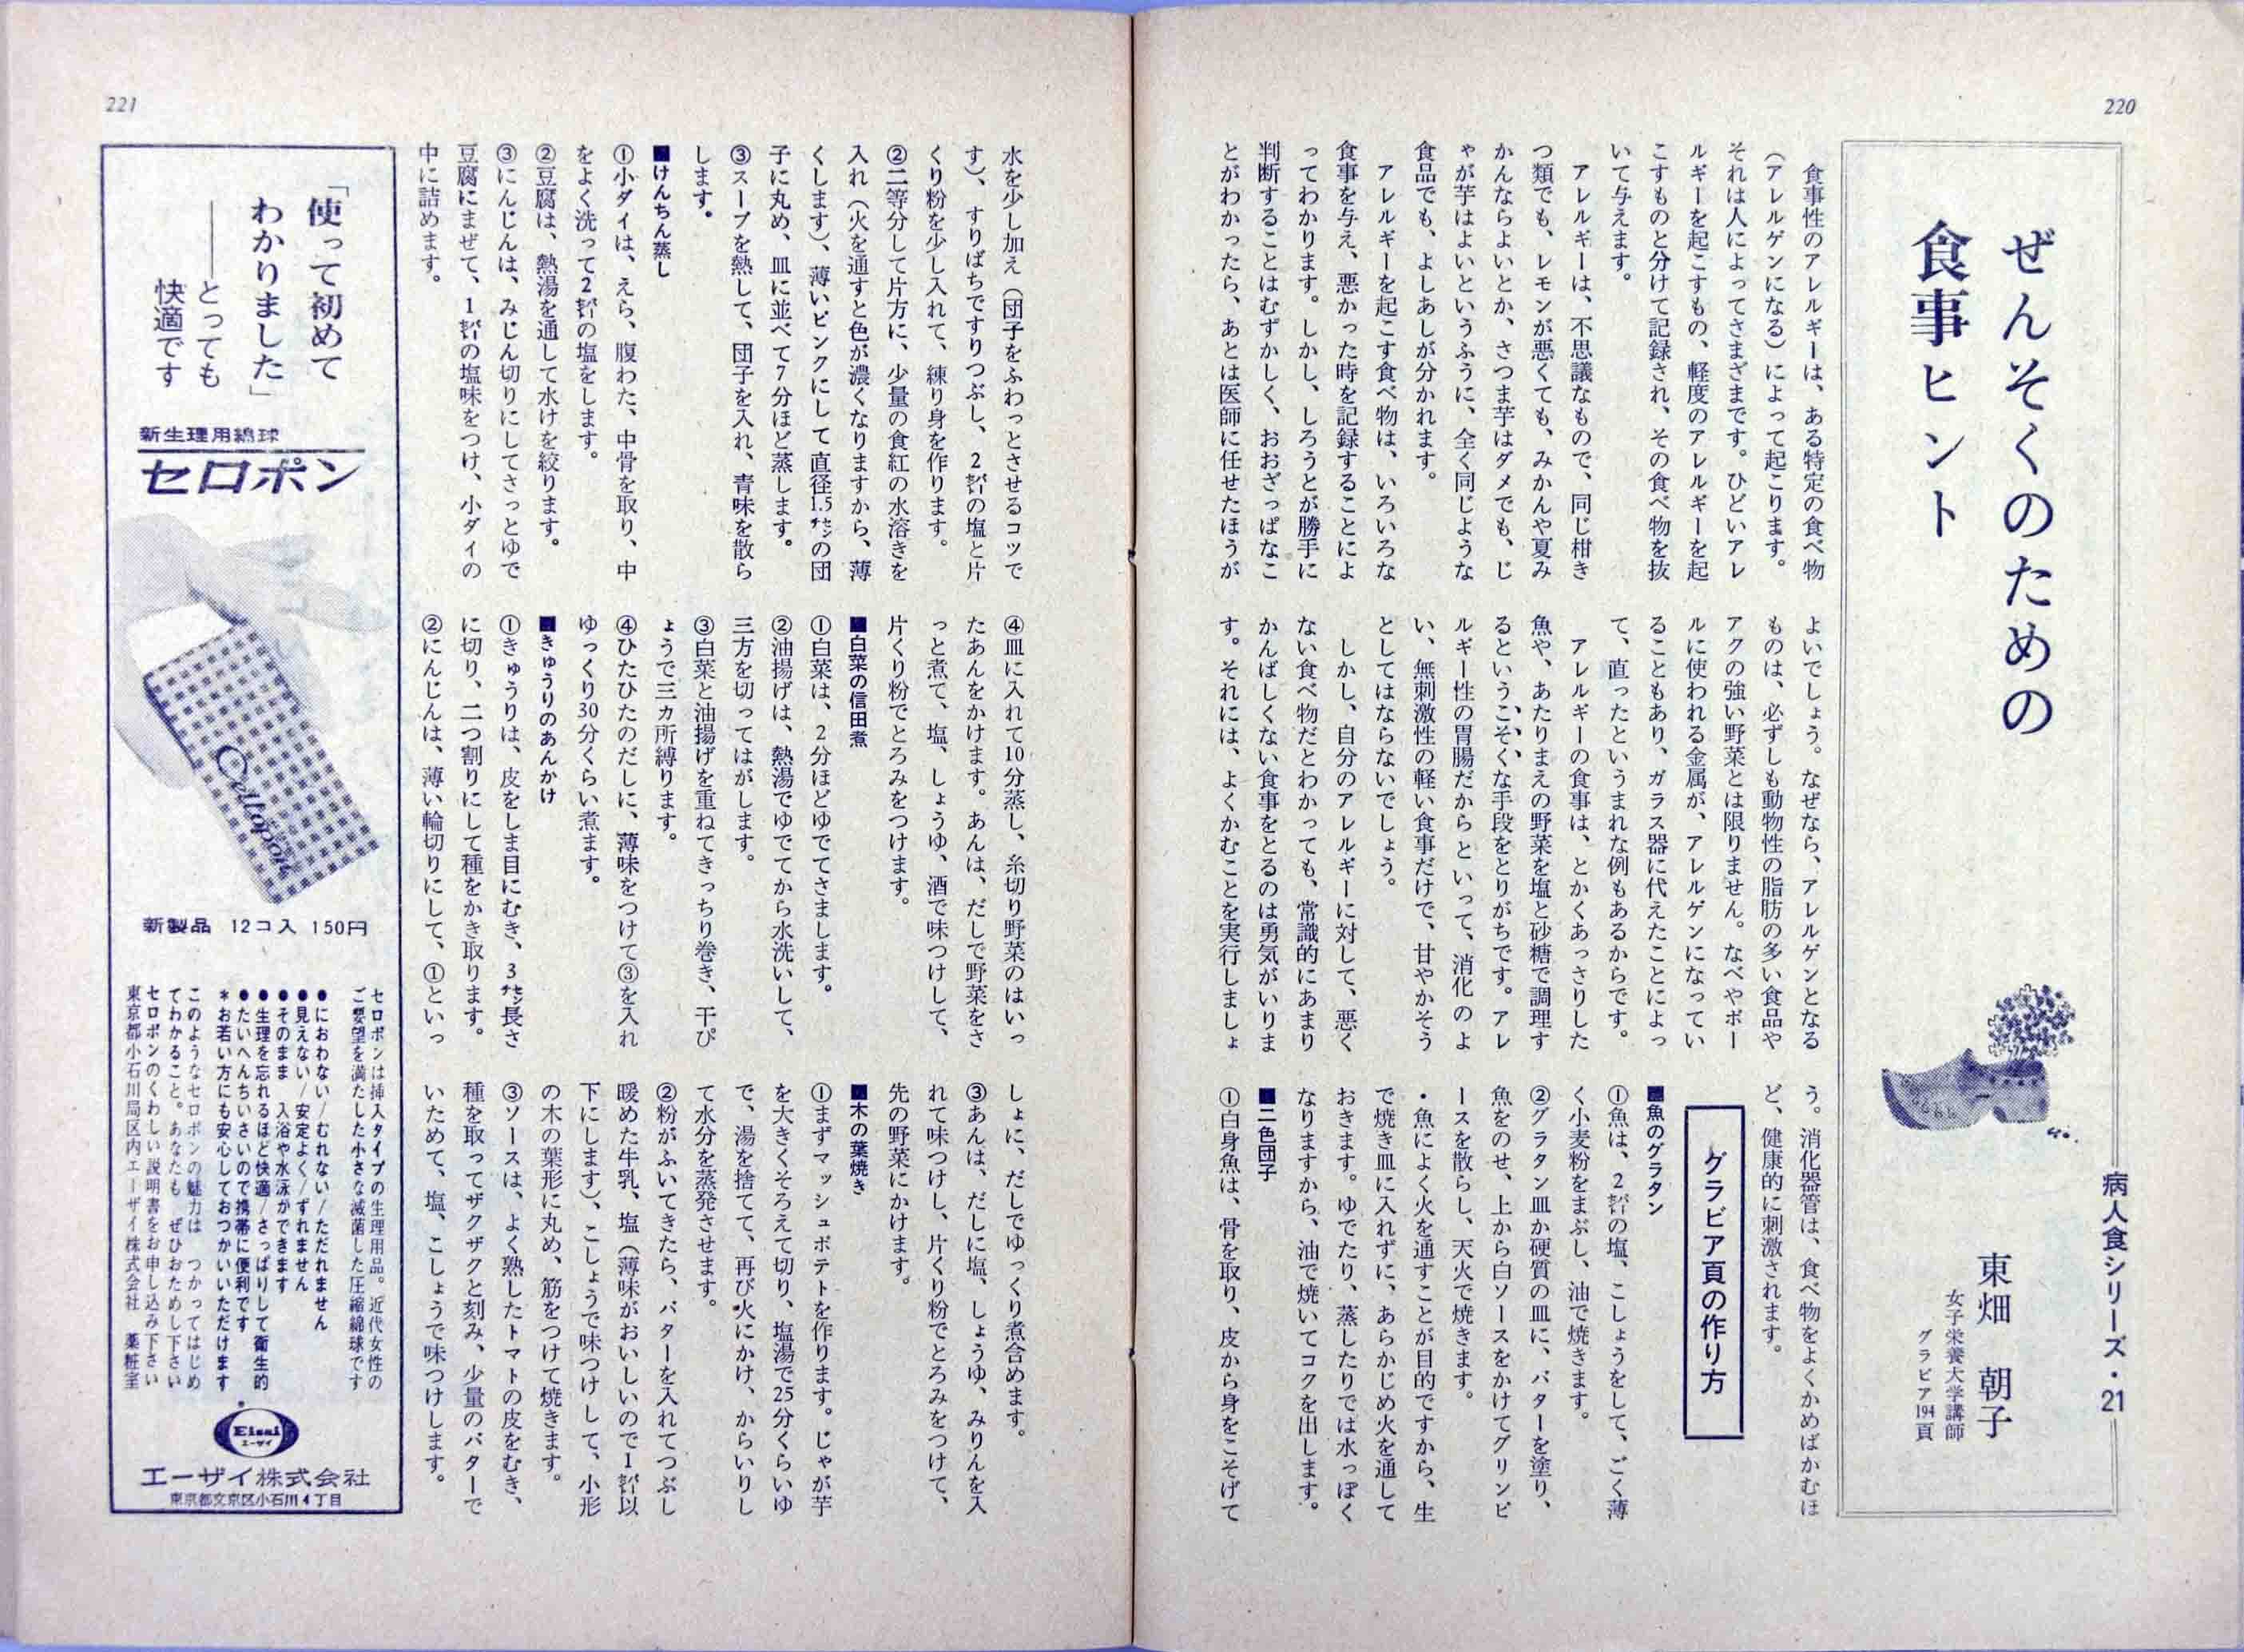 栄養と料理デジタルアーカイブス 昭和40年 1965年 9月第31巻第9号